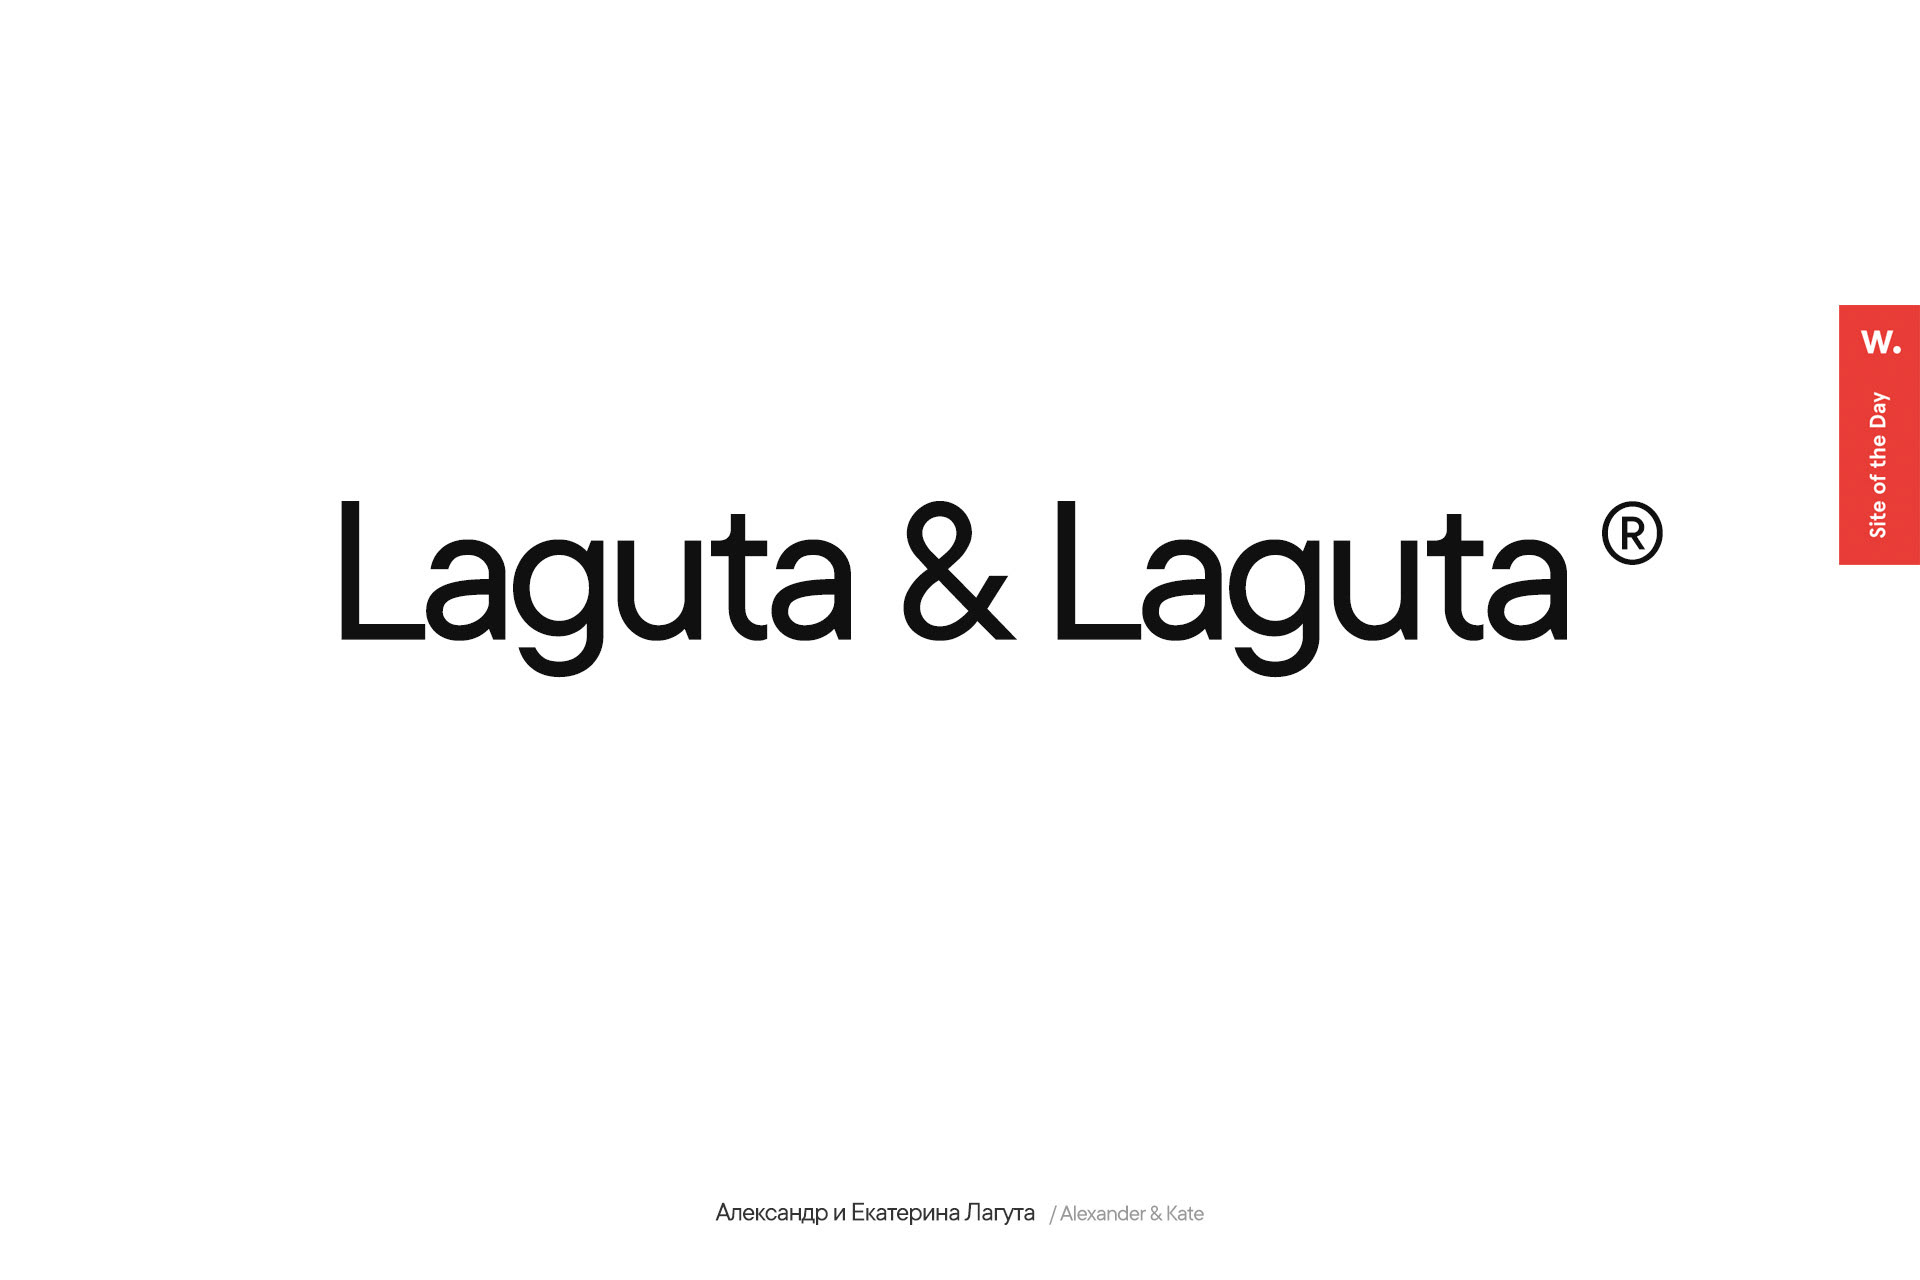 Laguta & Laguta — Изображение №1 — Интерфейсы, Анимация на Dprofile